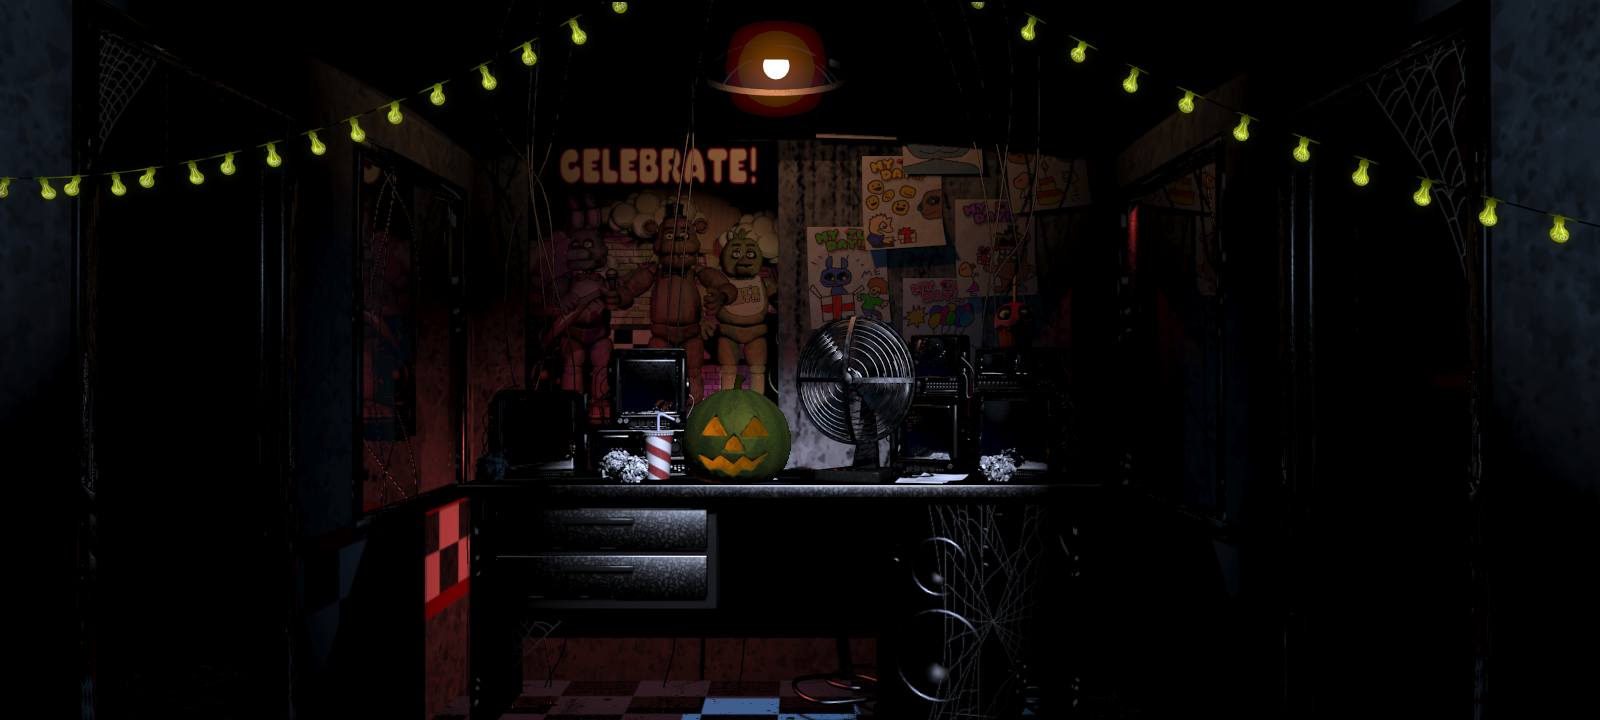 Happy Halloween :) FNAF 1 Doom Remake v3.3.0 has been released